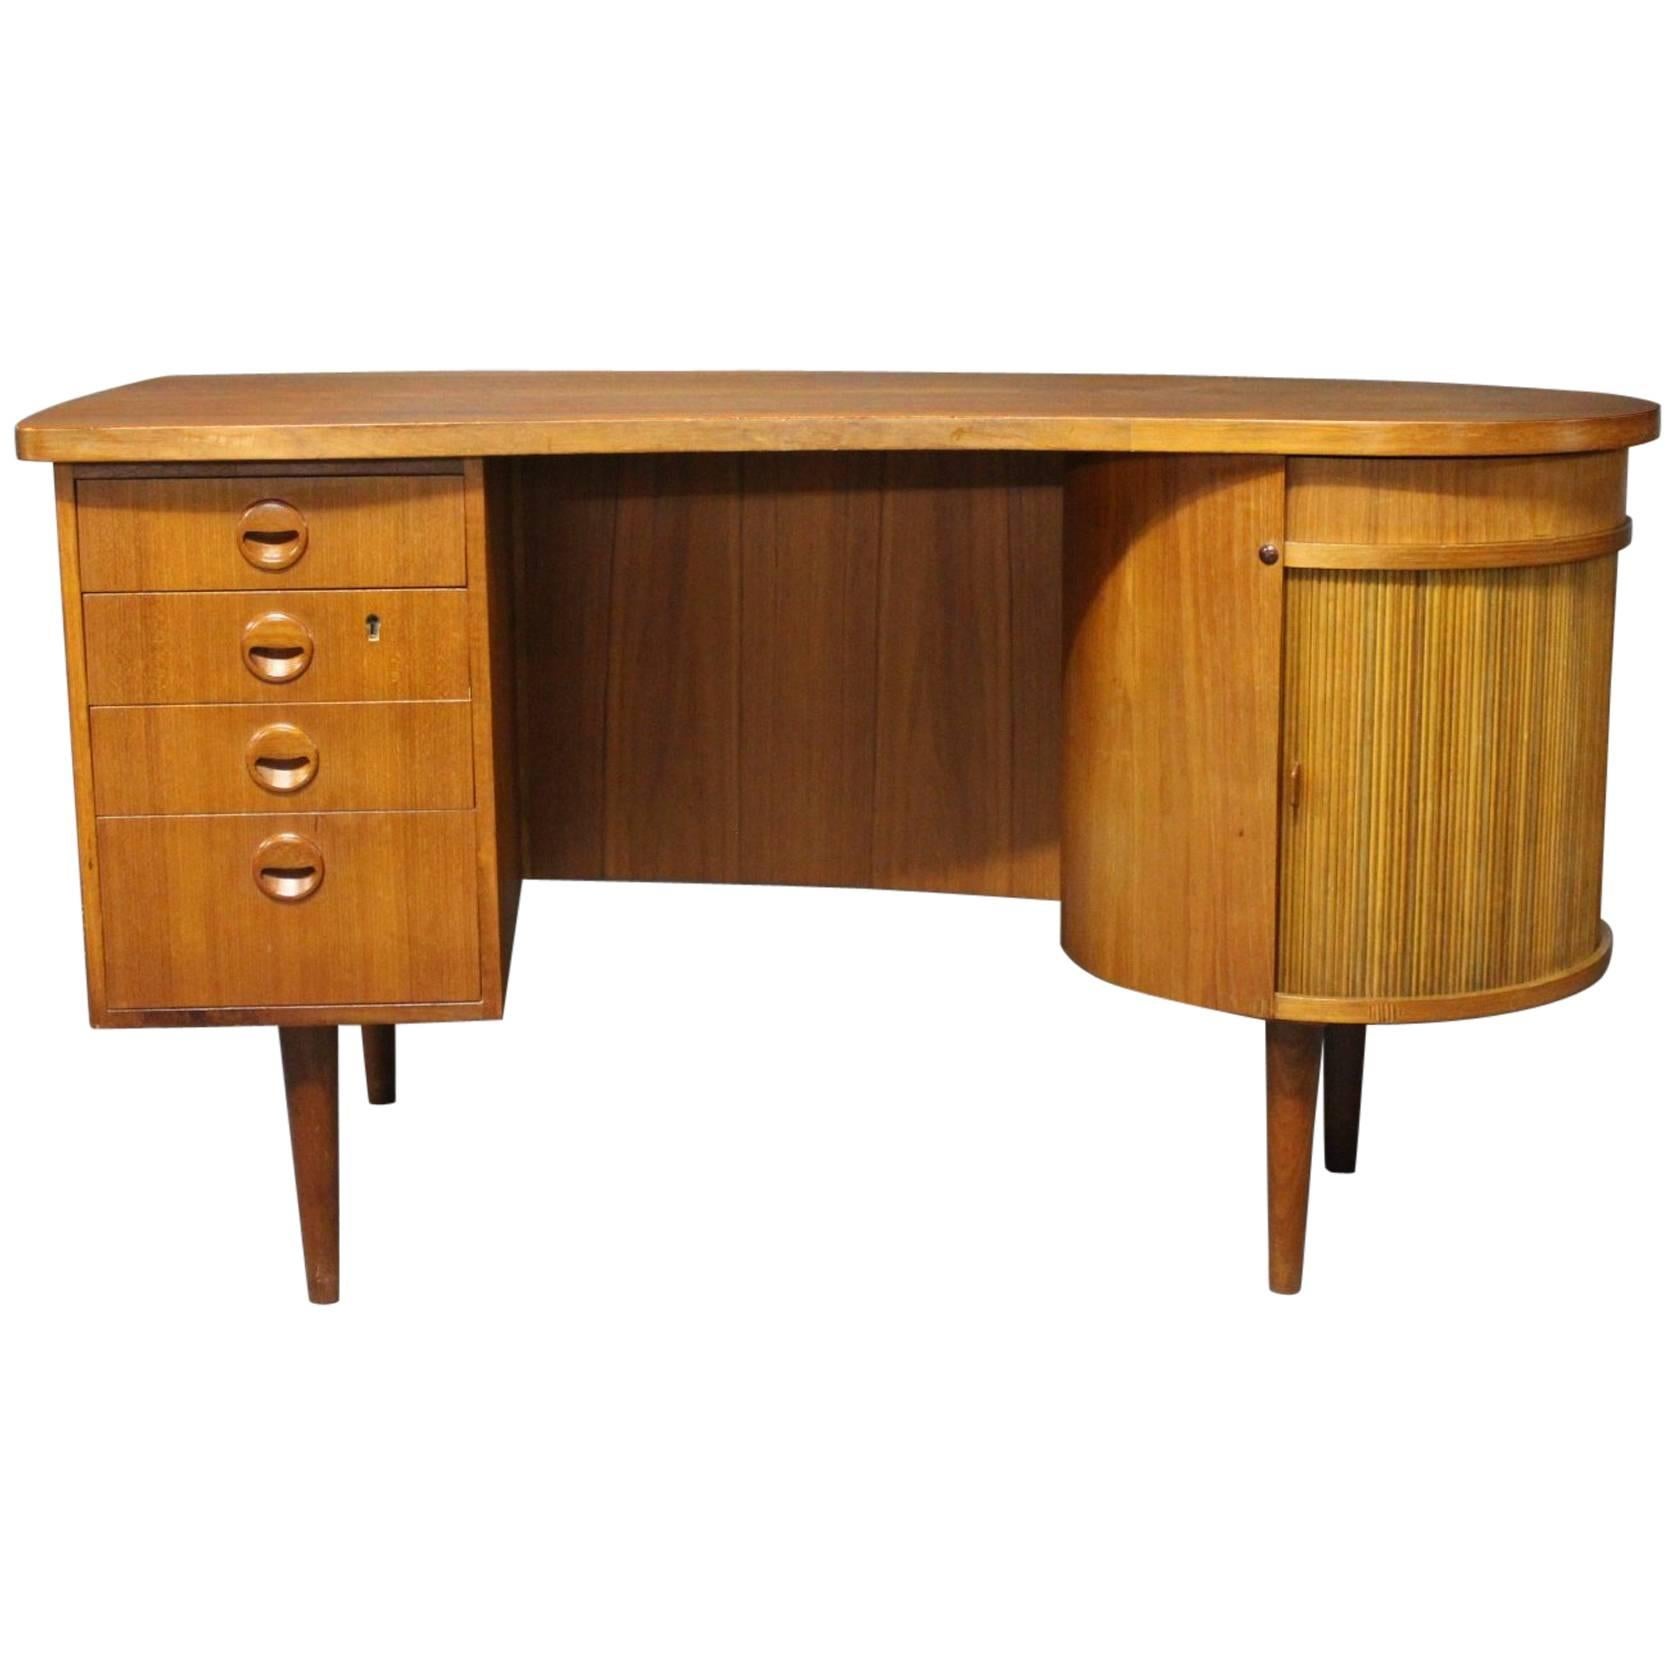 Desk in Teak Designed by Kai Kristiansen, Danish Design from the 1960s